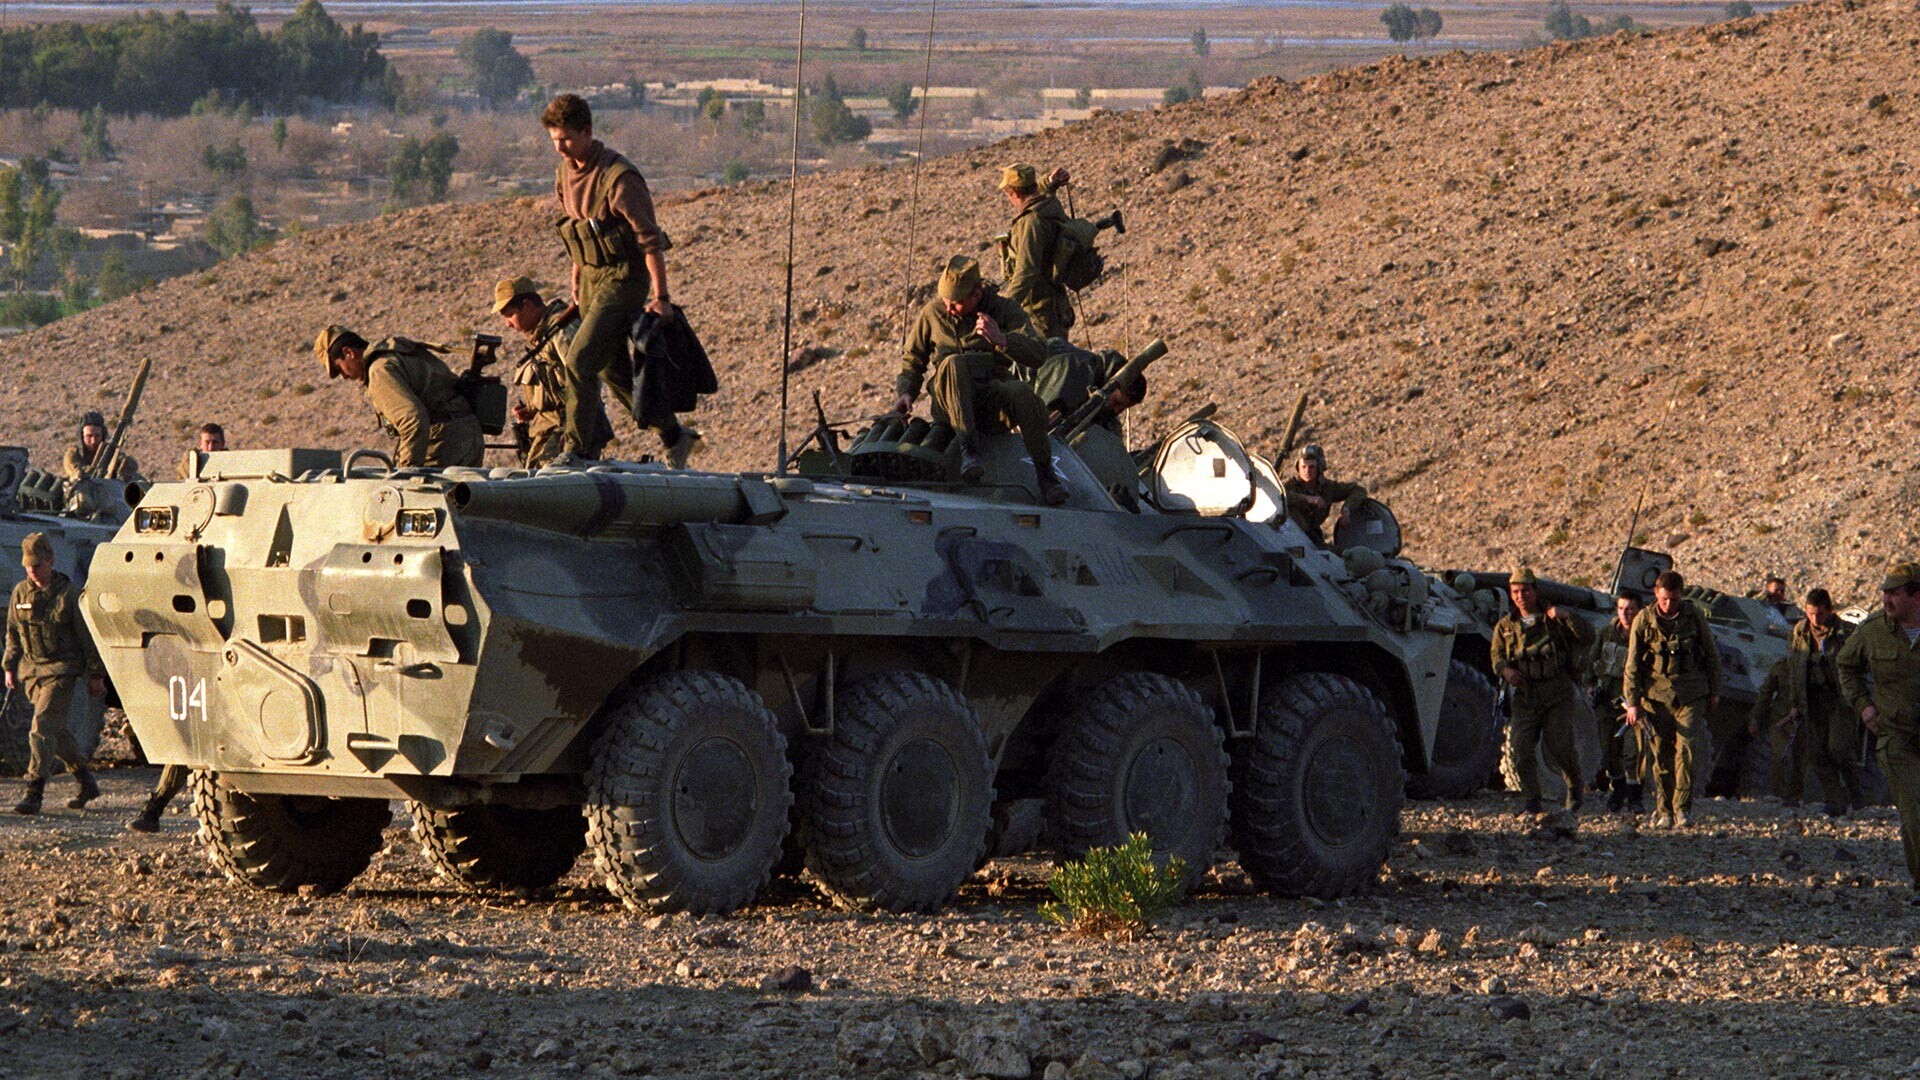 По победата во судирот со муџахедините единиците на рускиот Спецназ запленија 15 преносни противвоздушни ракетни системи „Стингер“ произведени во САД. Џалалабад, 1989. Авганистан.
